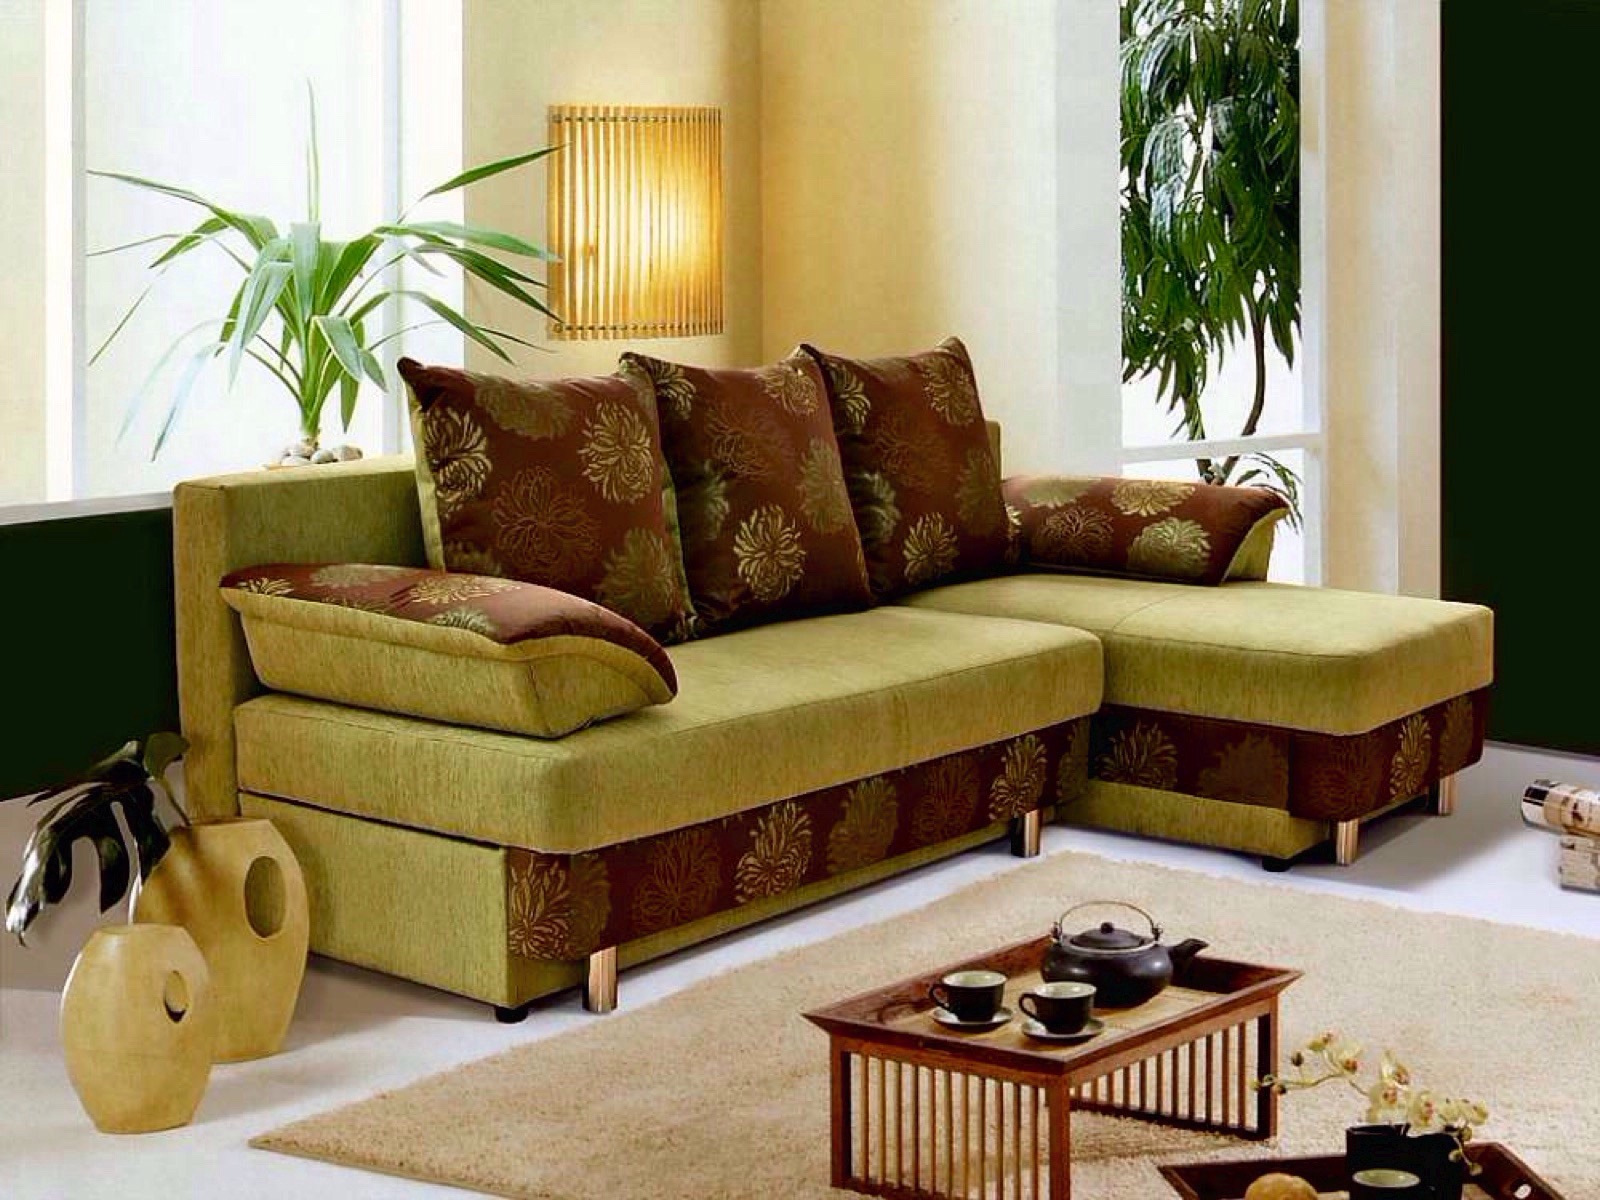 Купить мебель пинскдрев. Угловой диван Олимп 3. Мягкий угловой диван в гостиную Пинскдрев. Белорусская мебель диваны угловые.